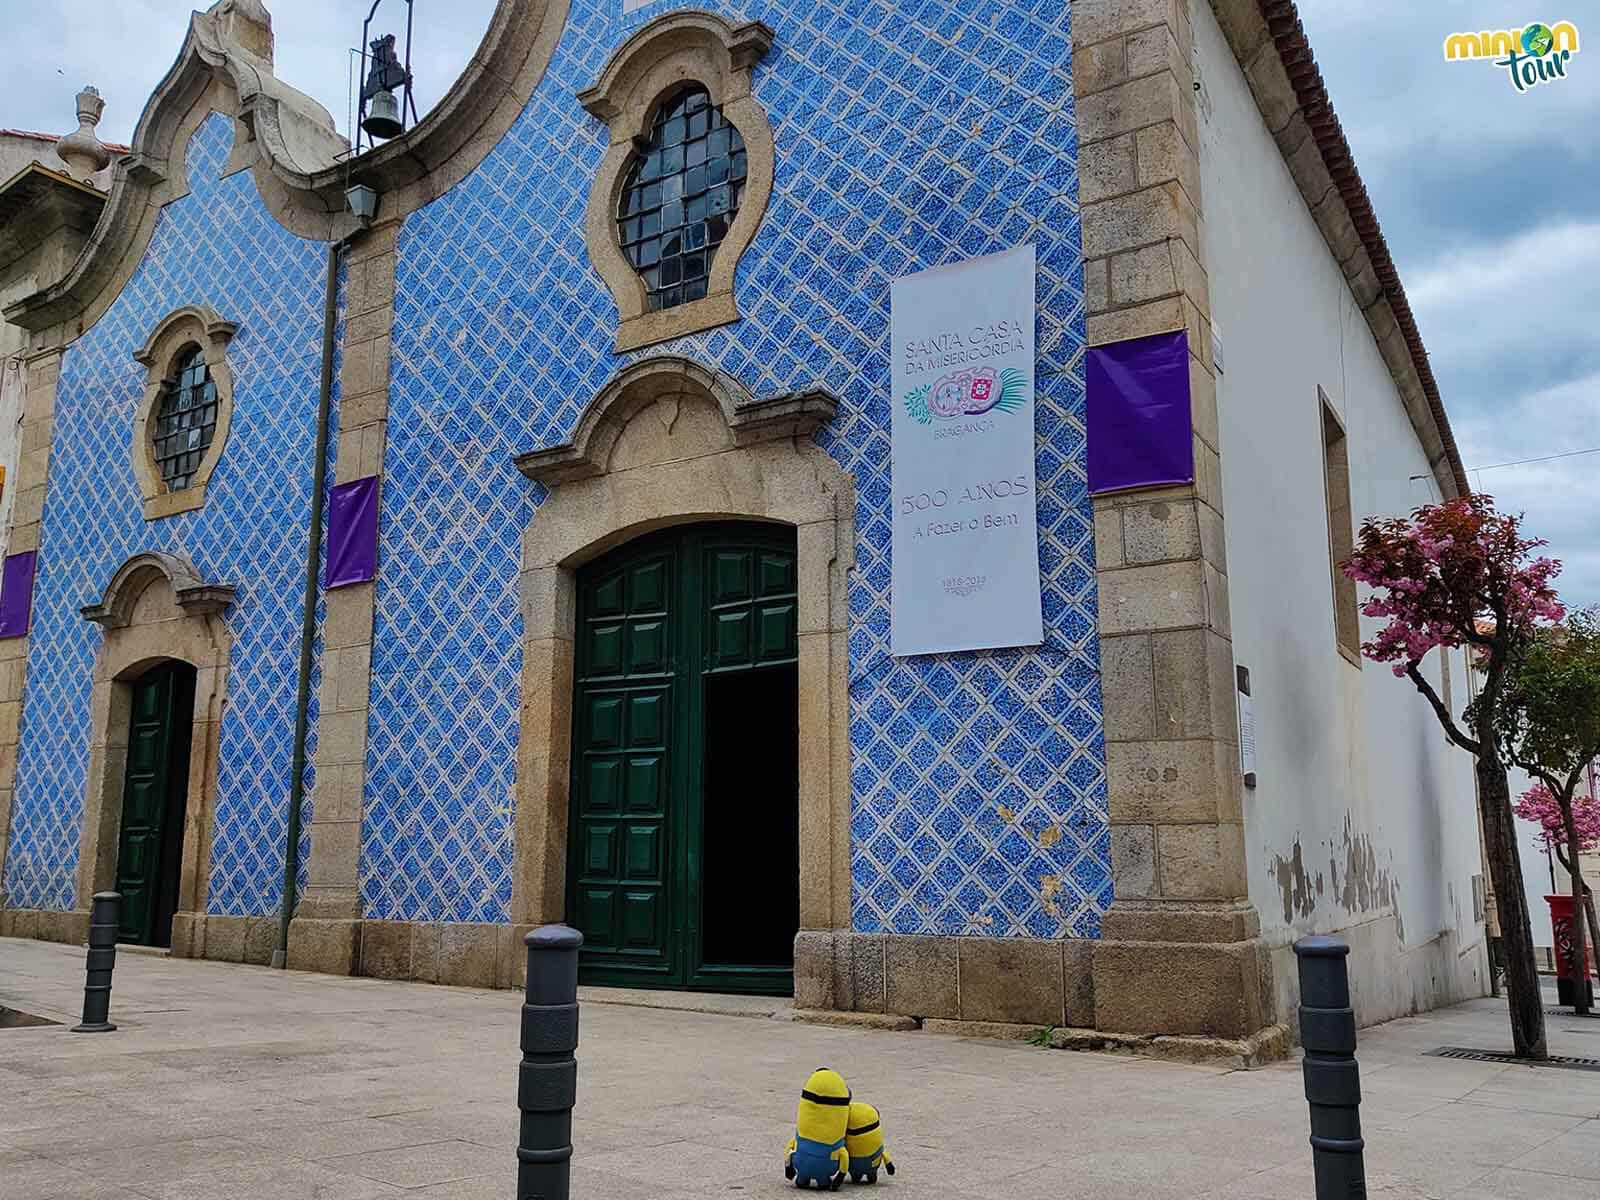 Tienes varias iglesias que ver en Bragança en un fin de semana